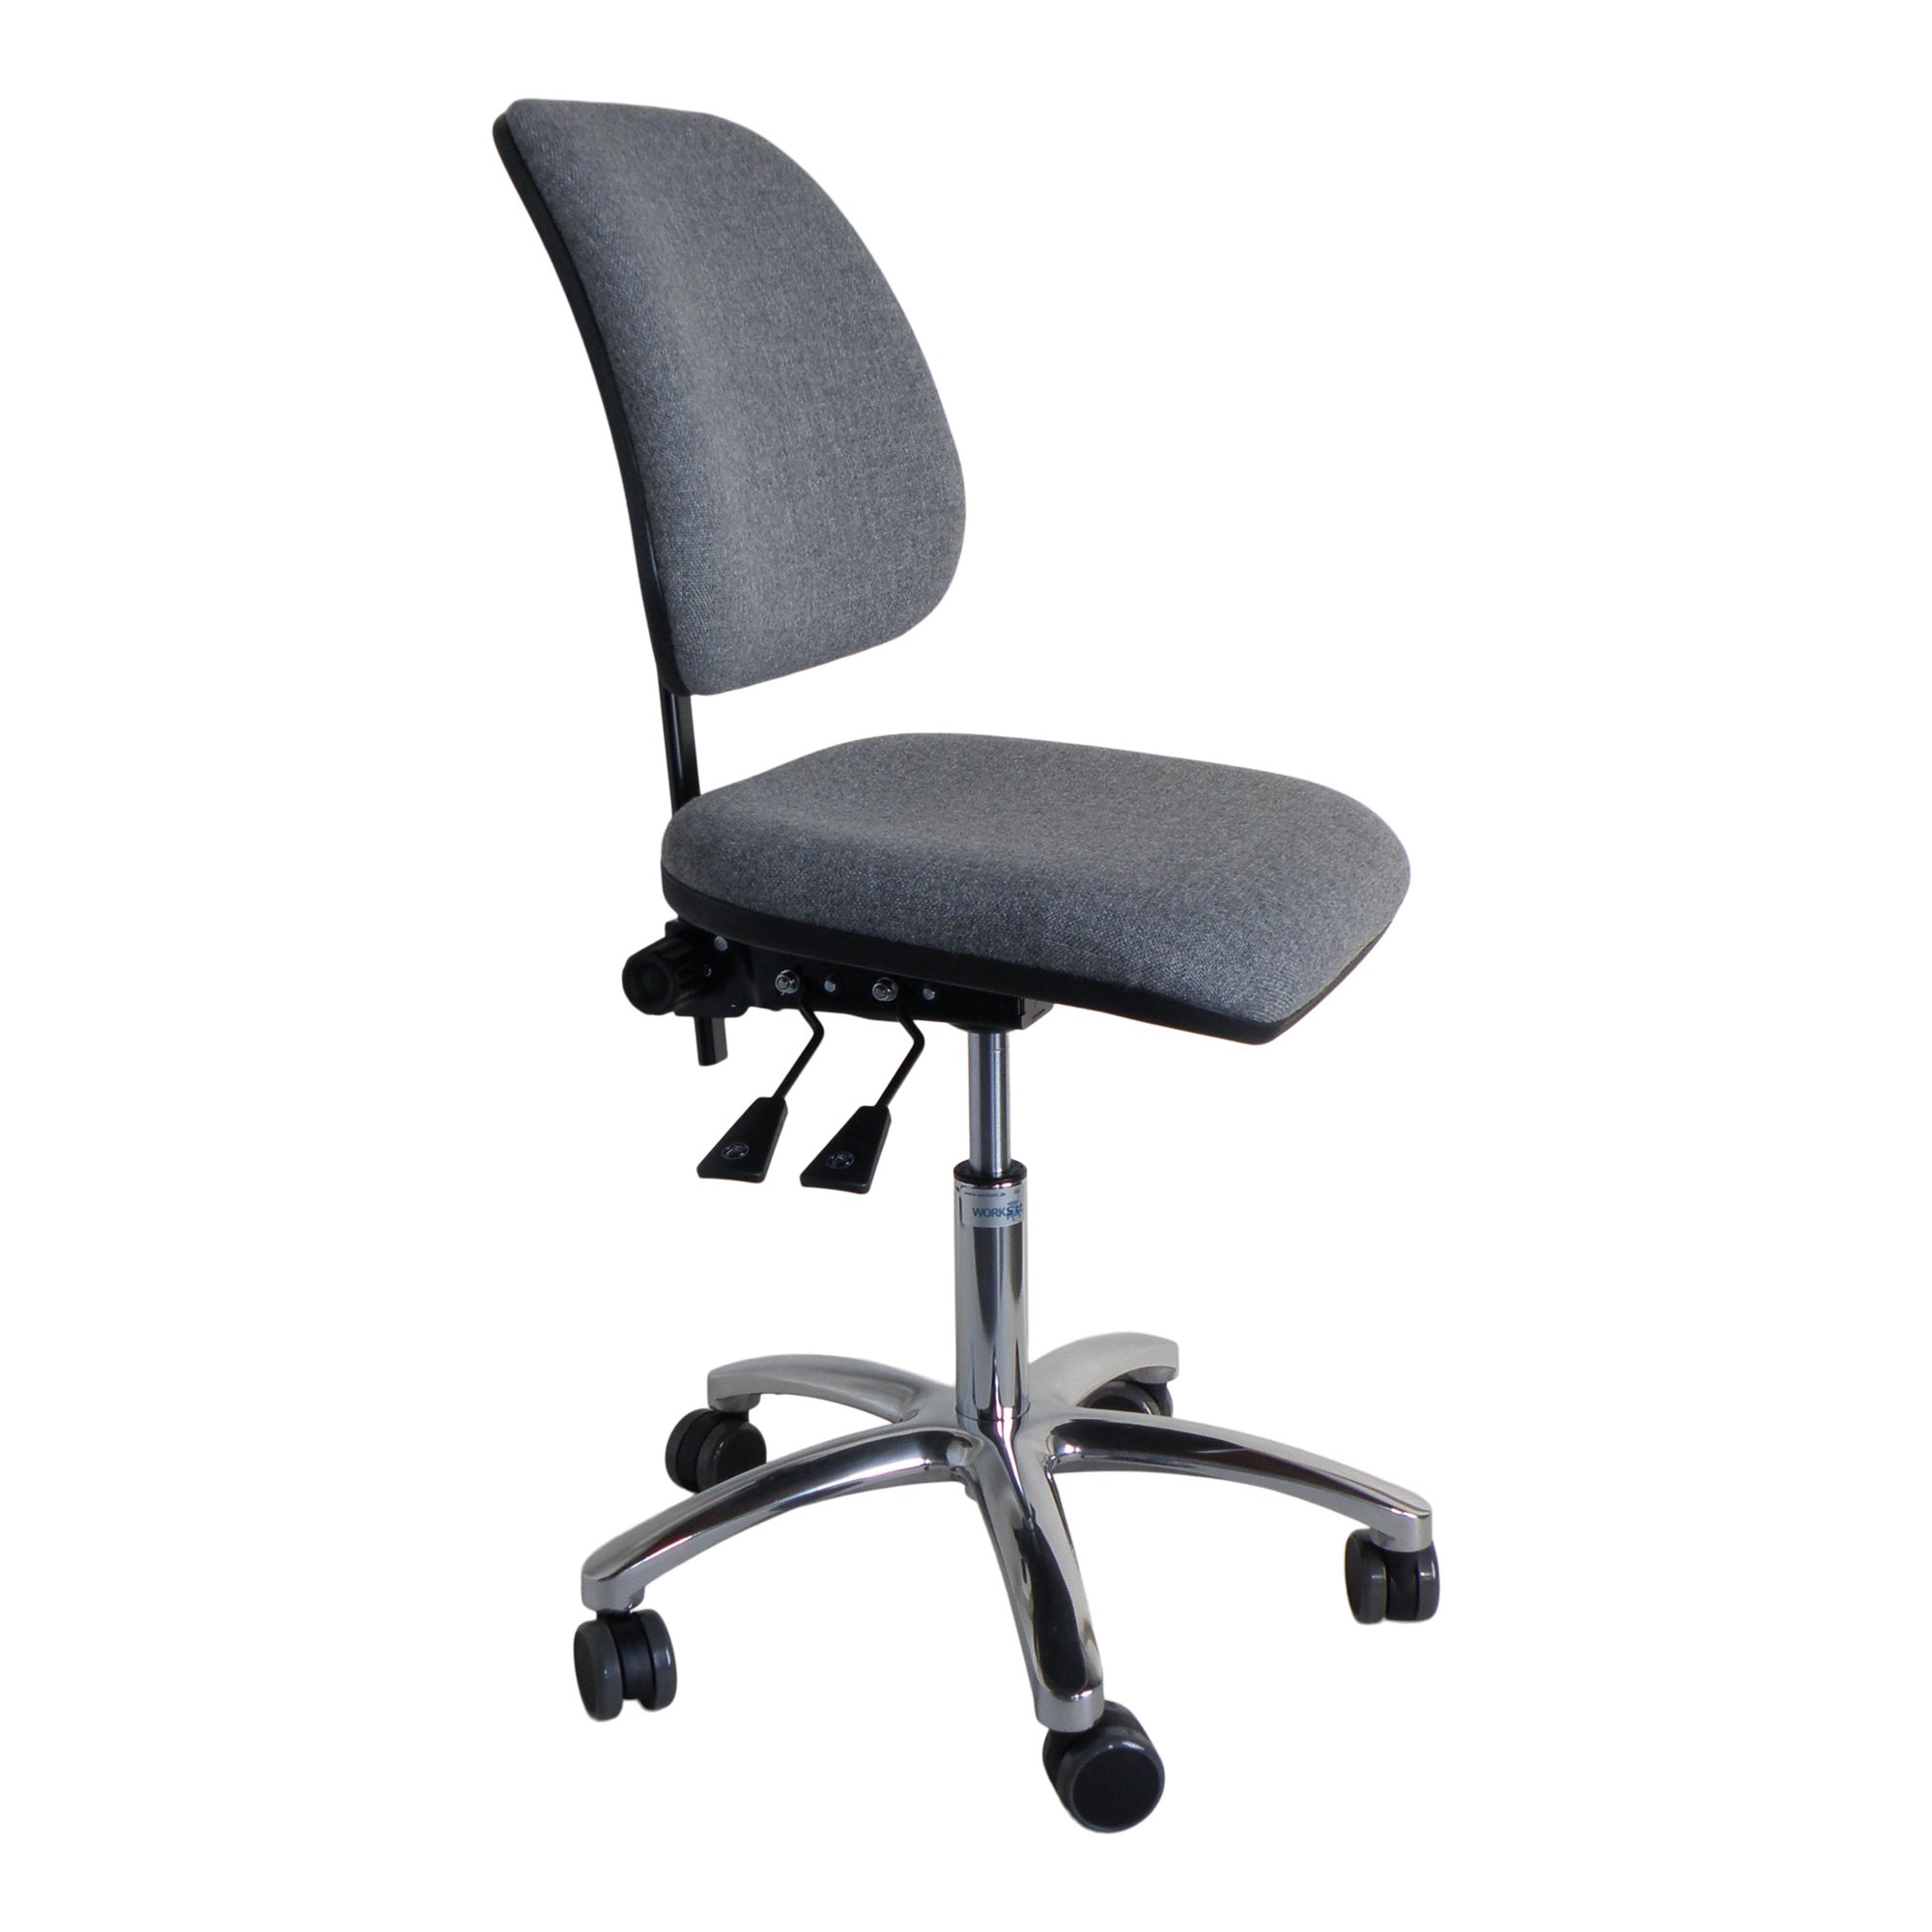 Rasende fjerne sød smag High Back Office ergonomisk kontorstol - grå/2024